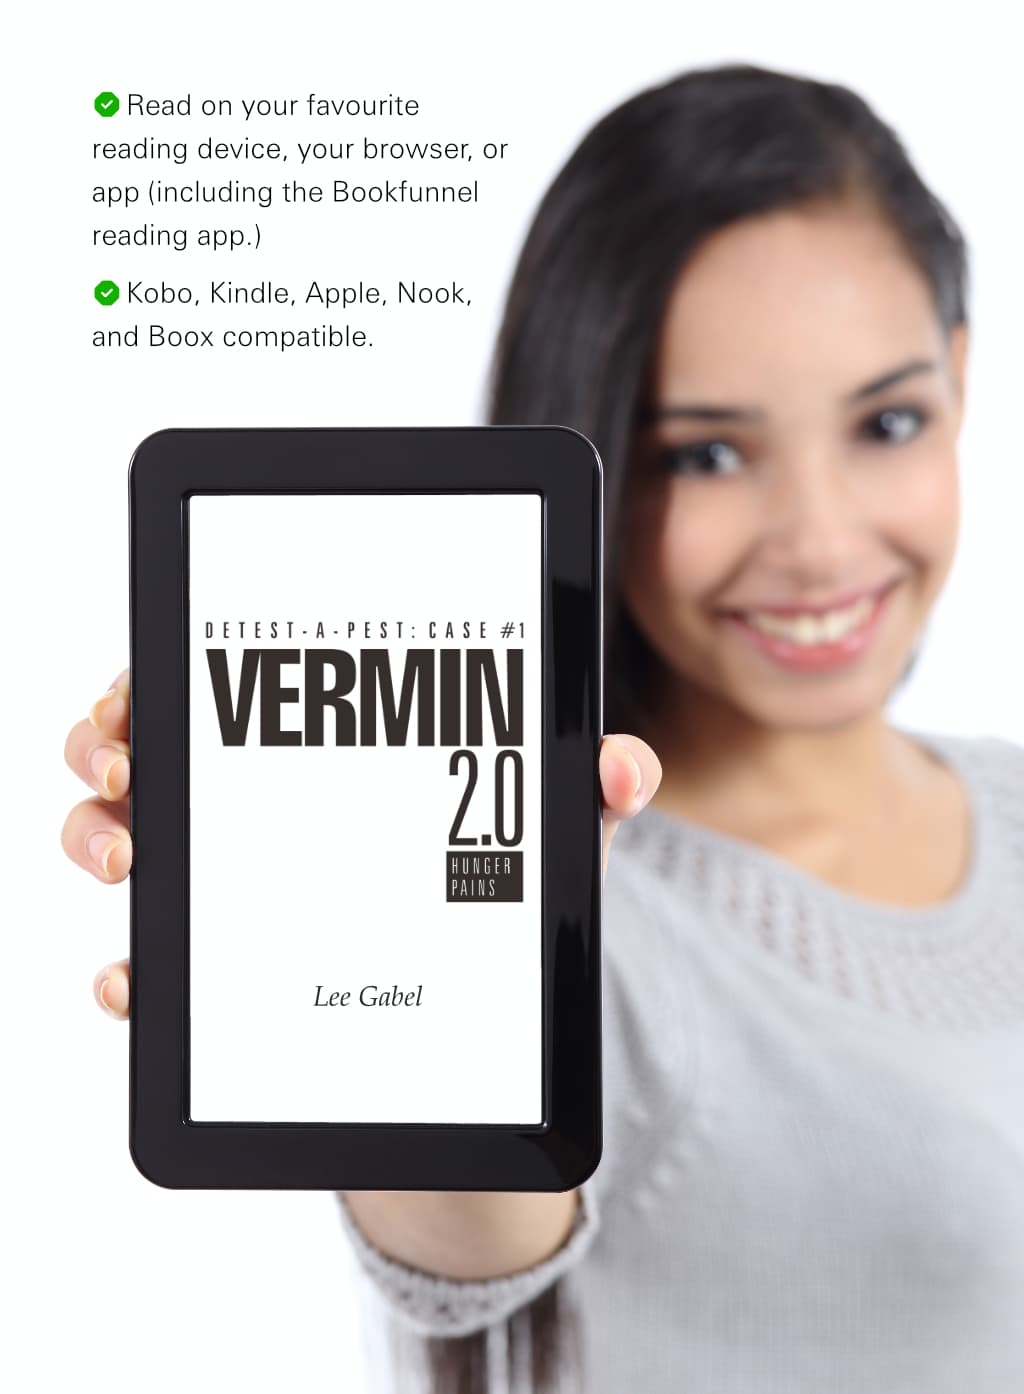 E-reader compatibility guarantee for Vermin 2.0 e-book.